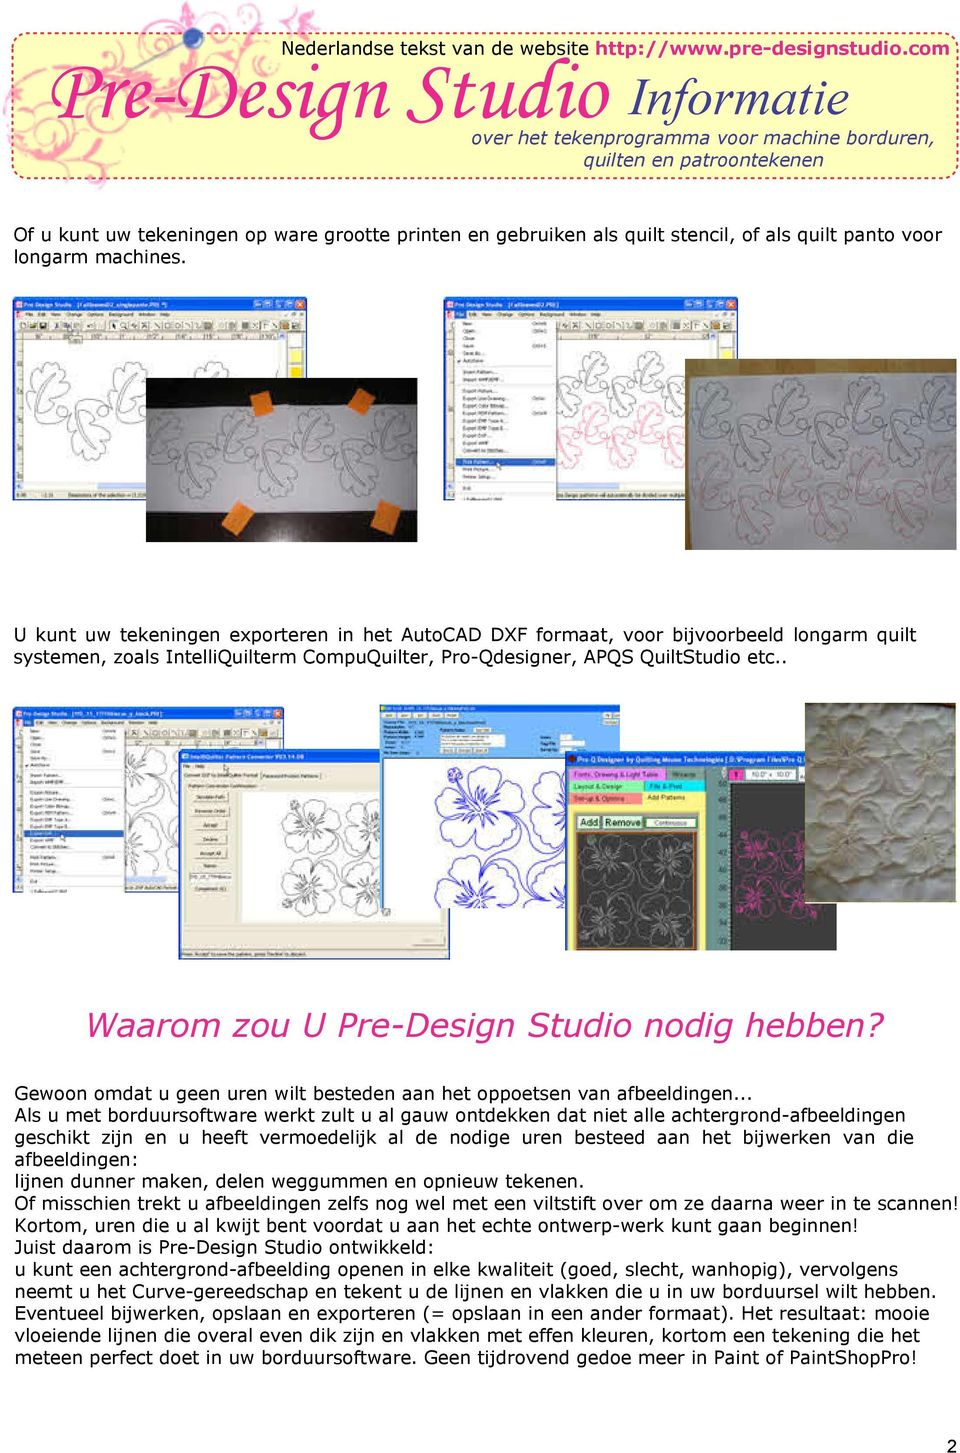 . Waarom zou U Pre-Design Studio nodig hebben? Gewoon omdat u geen uren wilt besteden aan het oppoetsen van afbeeldingen.